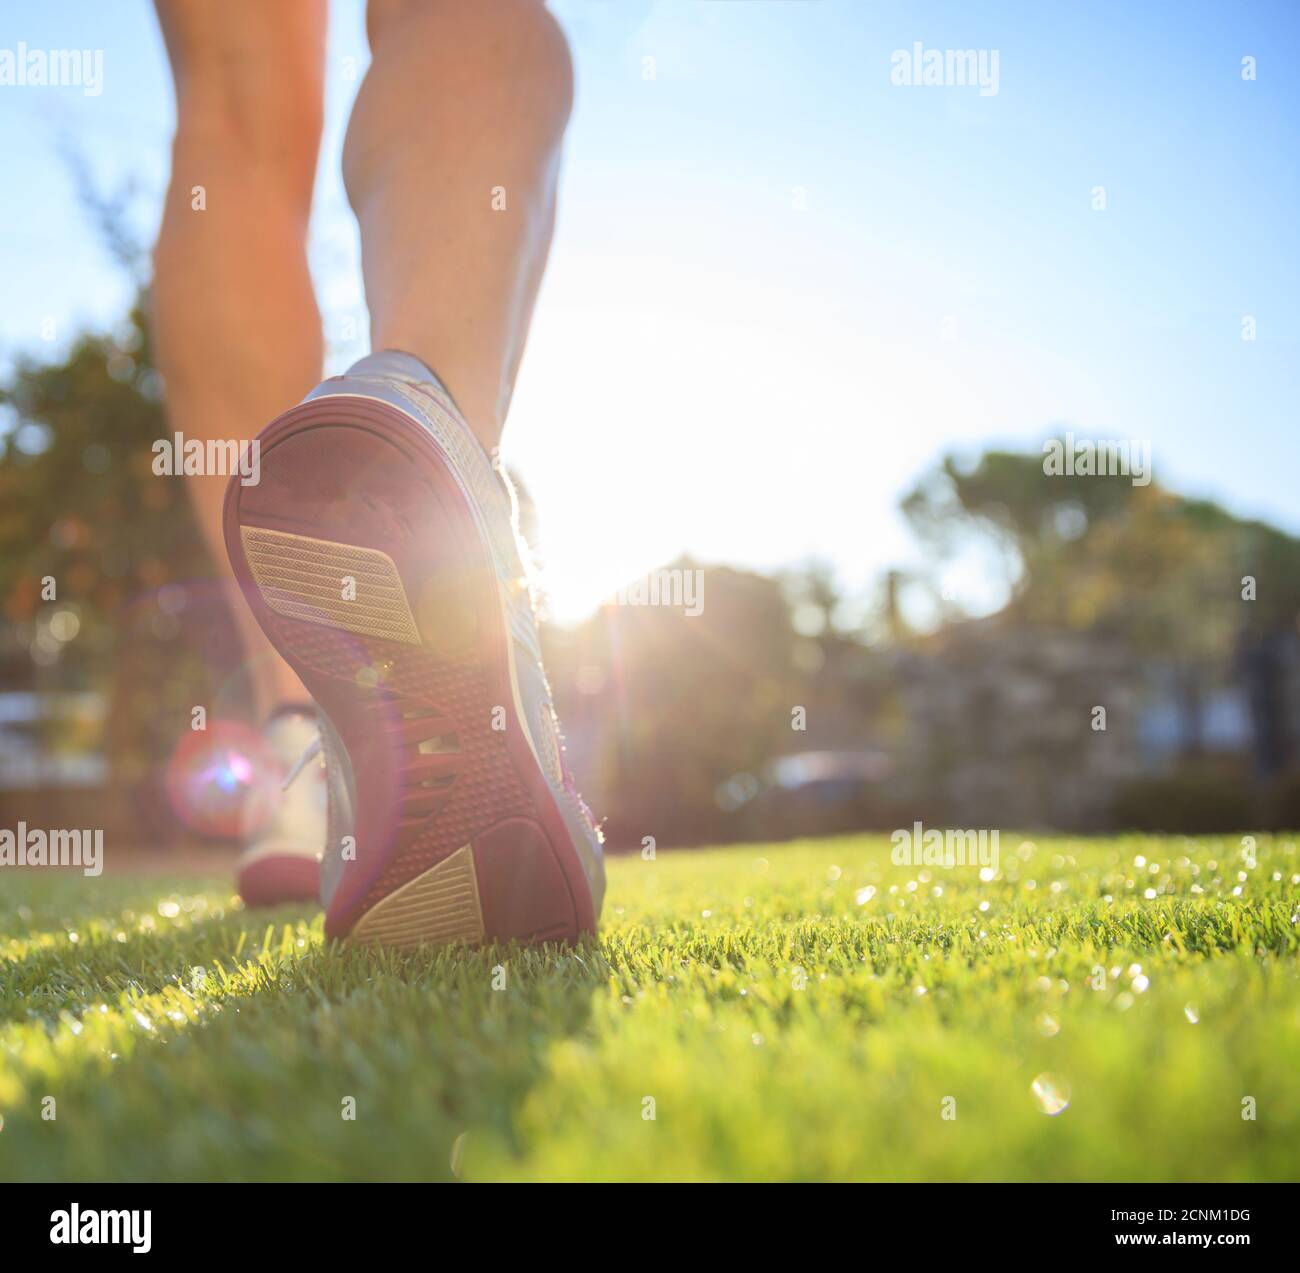 Weibliche Outdoor Fitness Jogging und Trainingskonzept, gesunder Lebensstil. Frau Athlet Läufer Füße laufen auf dem Gras, Nahaufnahme auf Schuhen. Stockfoto